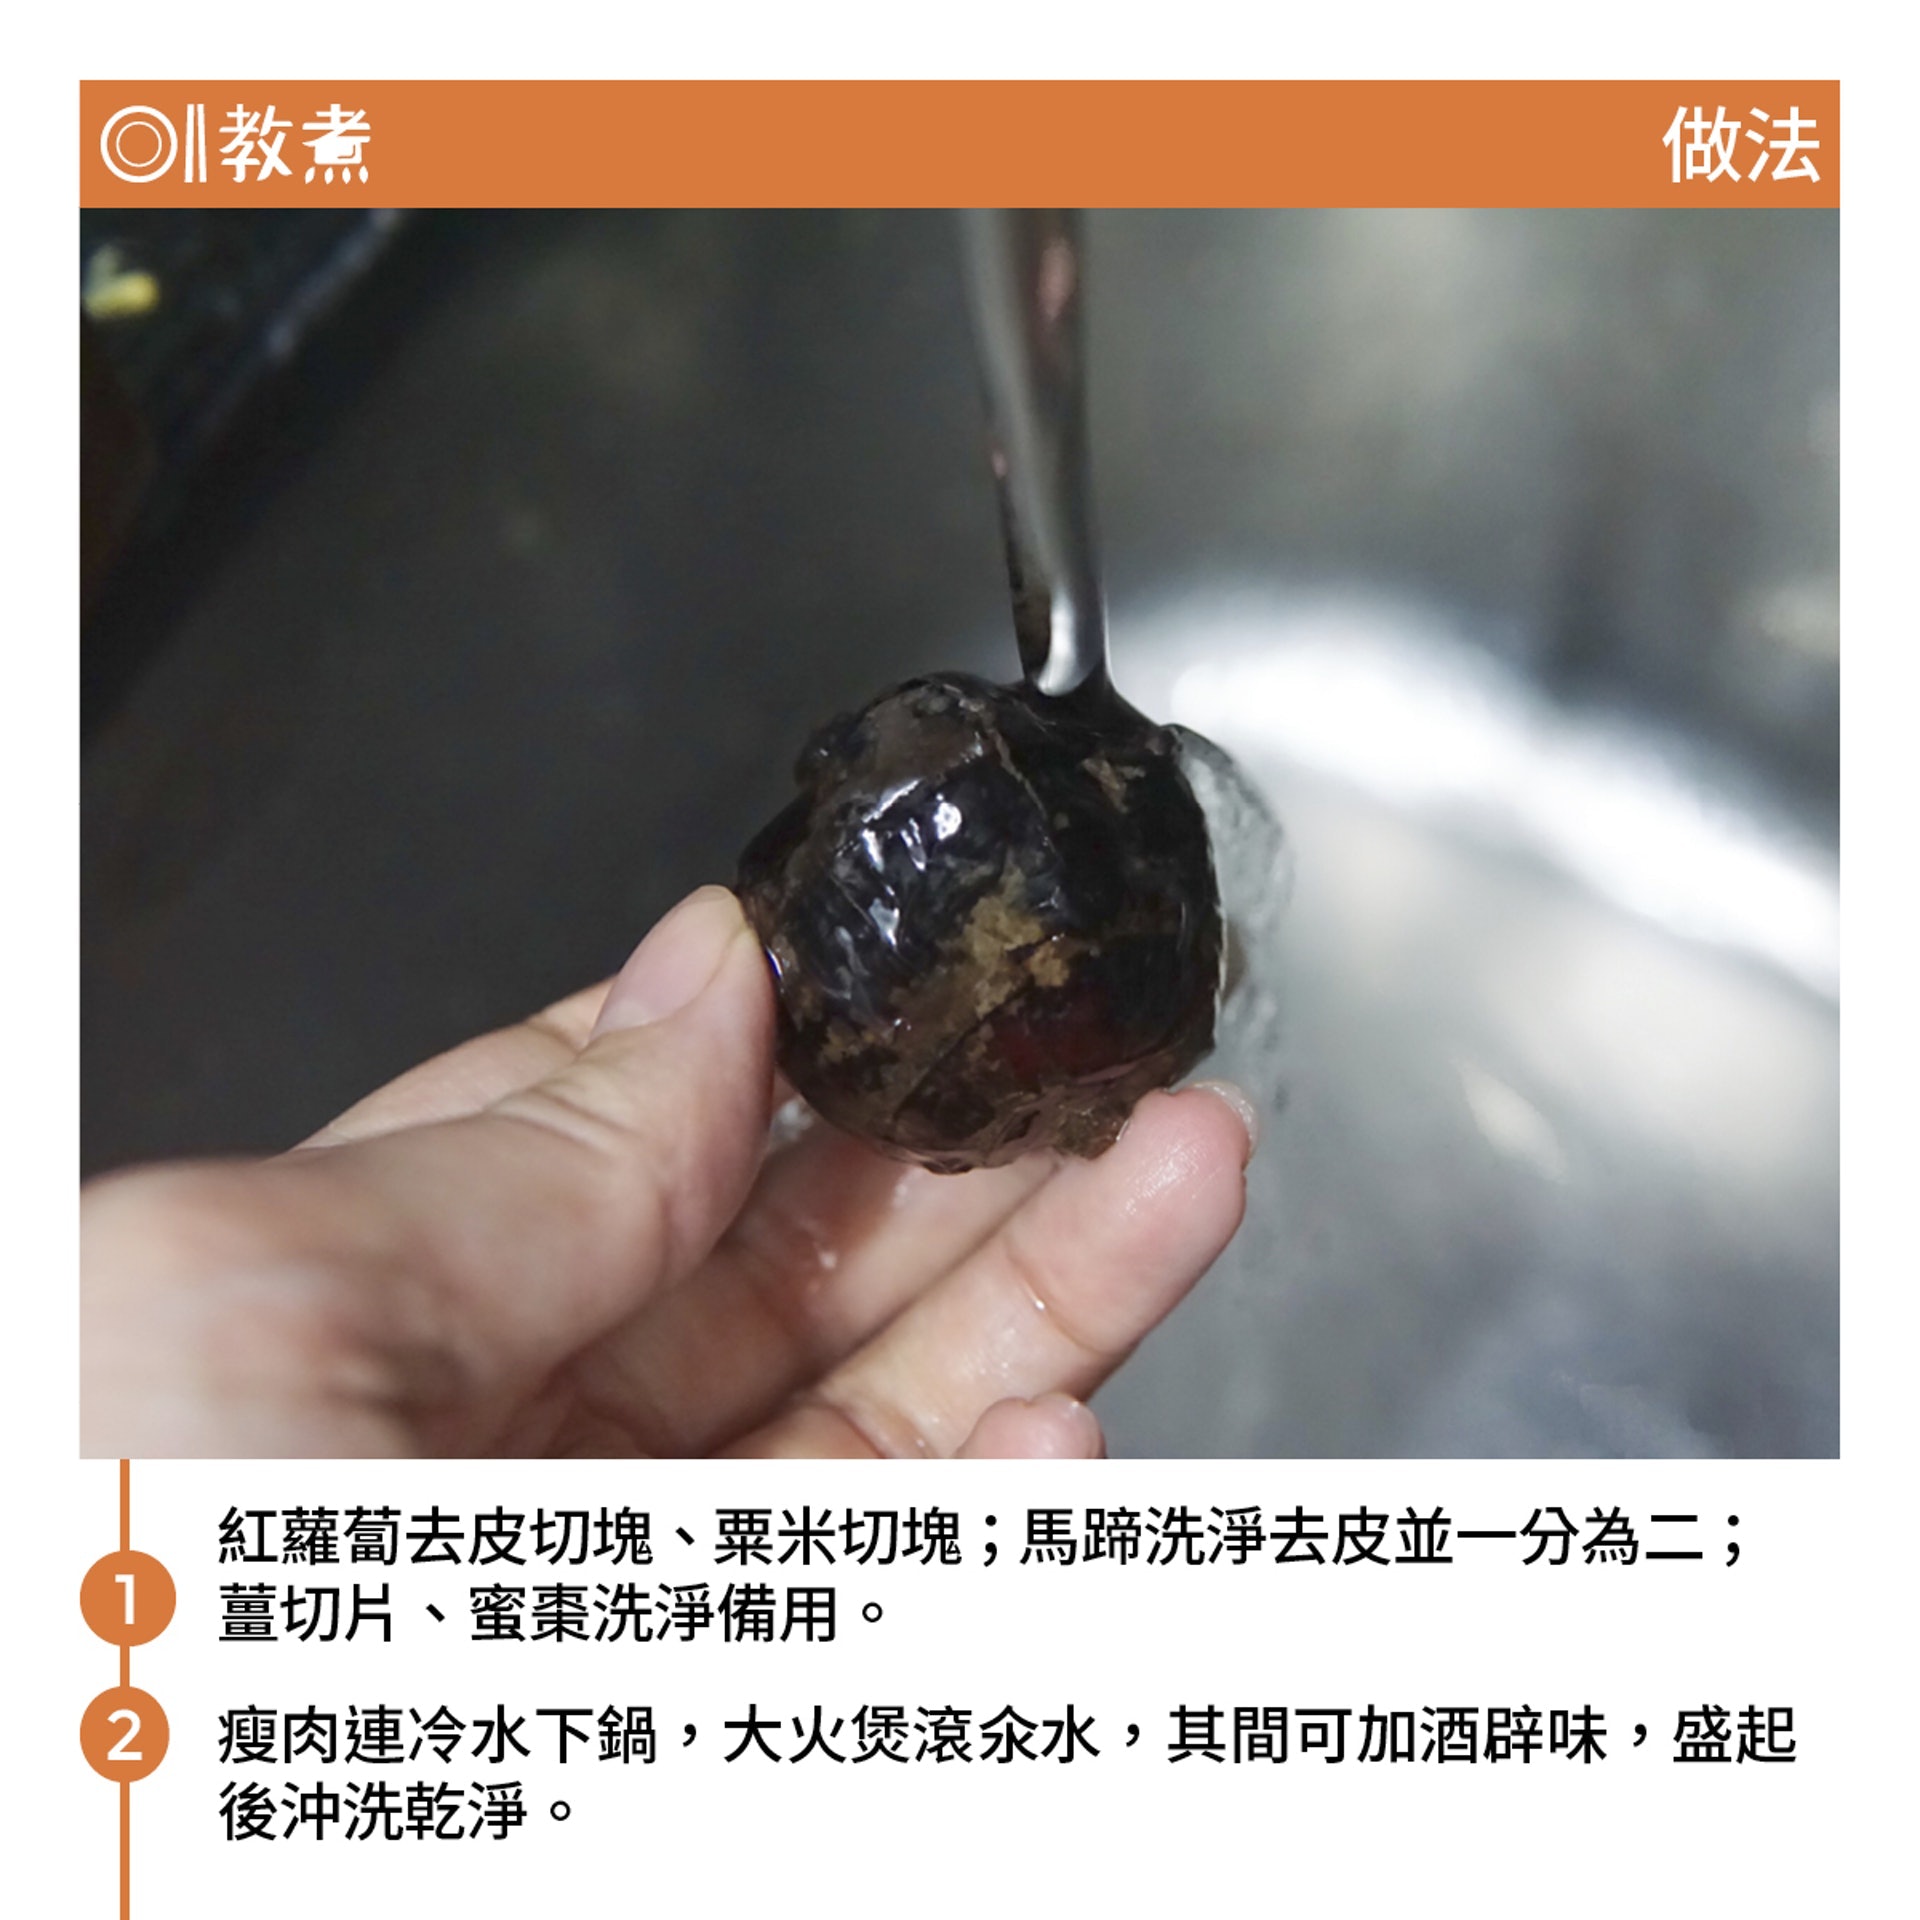 腐竹蘿蔔粟米瘦肉湯食譜